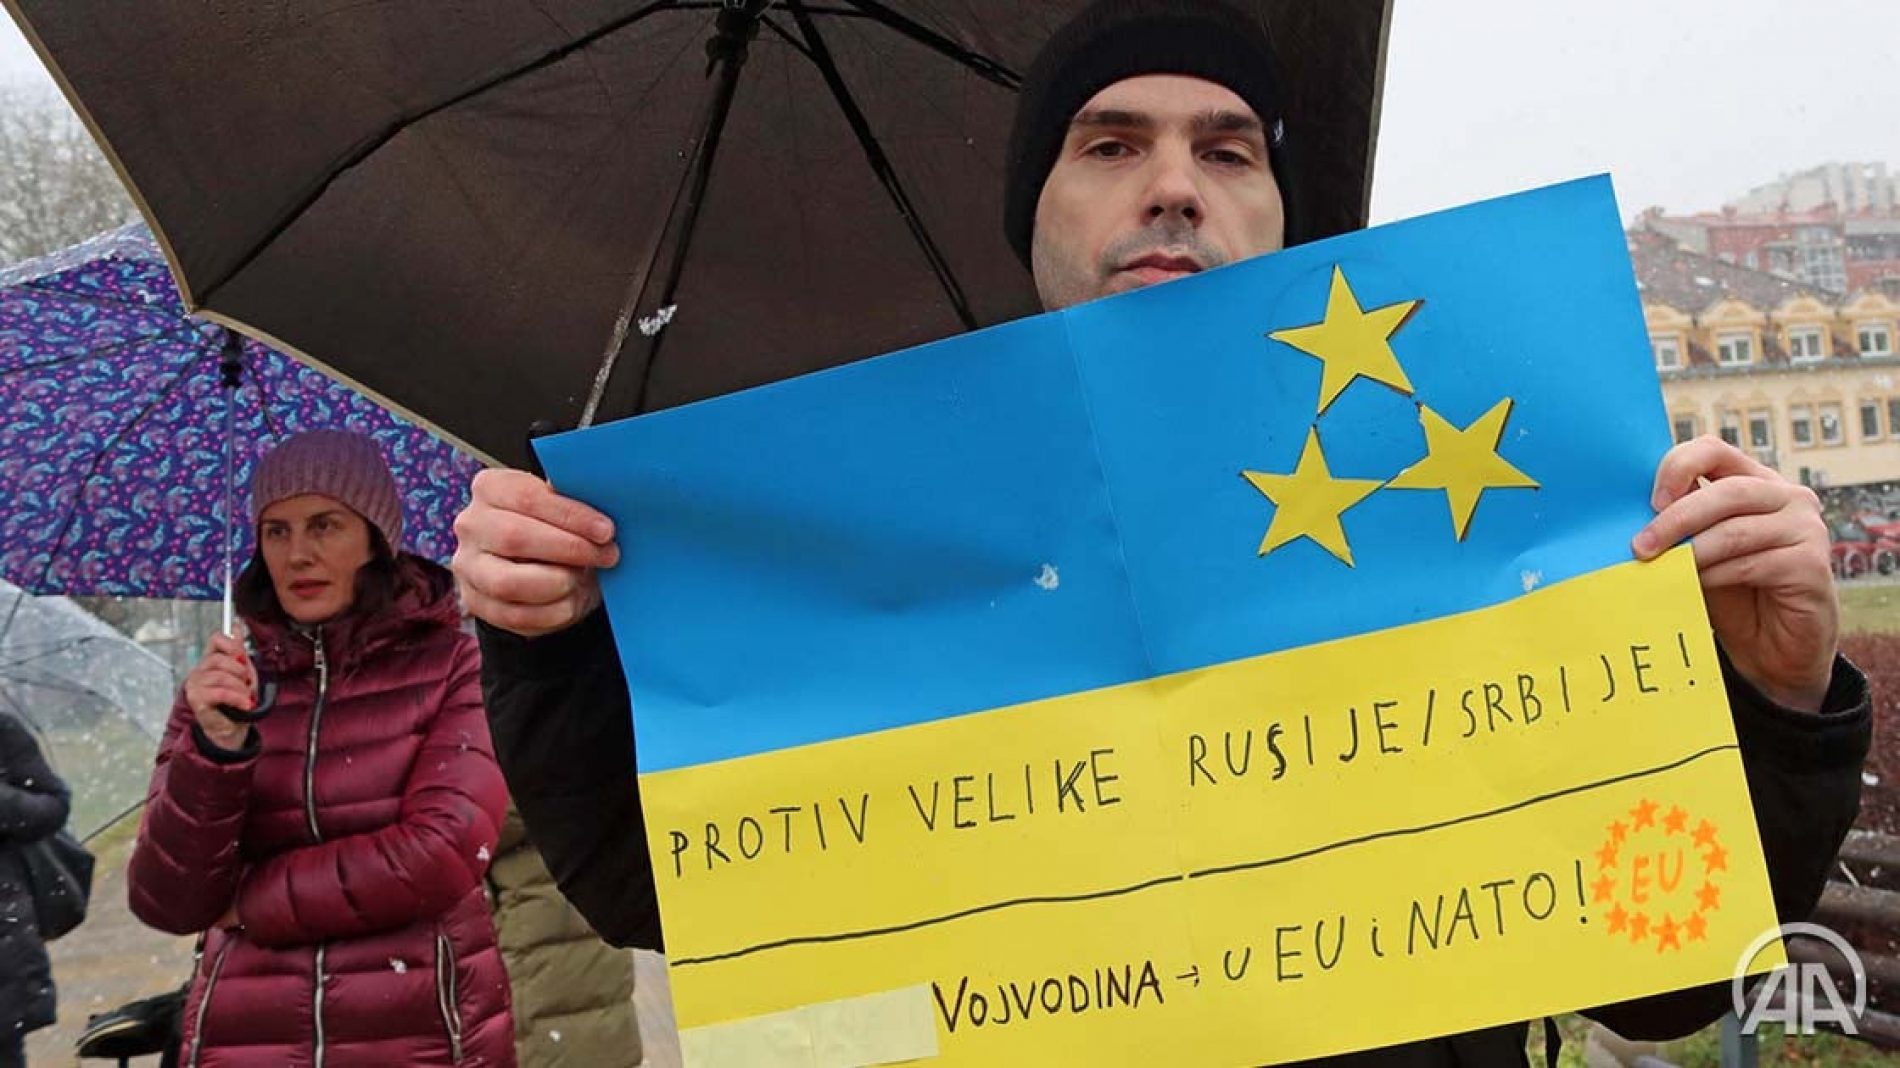 Učesnici skupa podrške Ukrajini u Novom Sadu: Srbijansko klackanje između istoka i zapada kockanje sa sudbinom društva